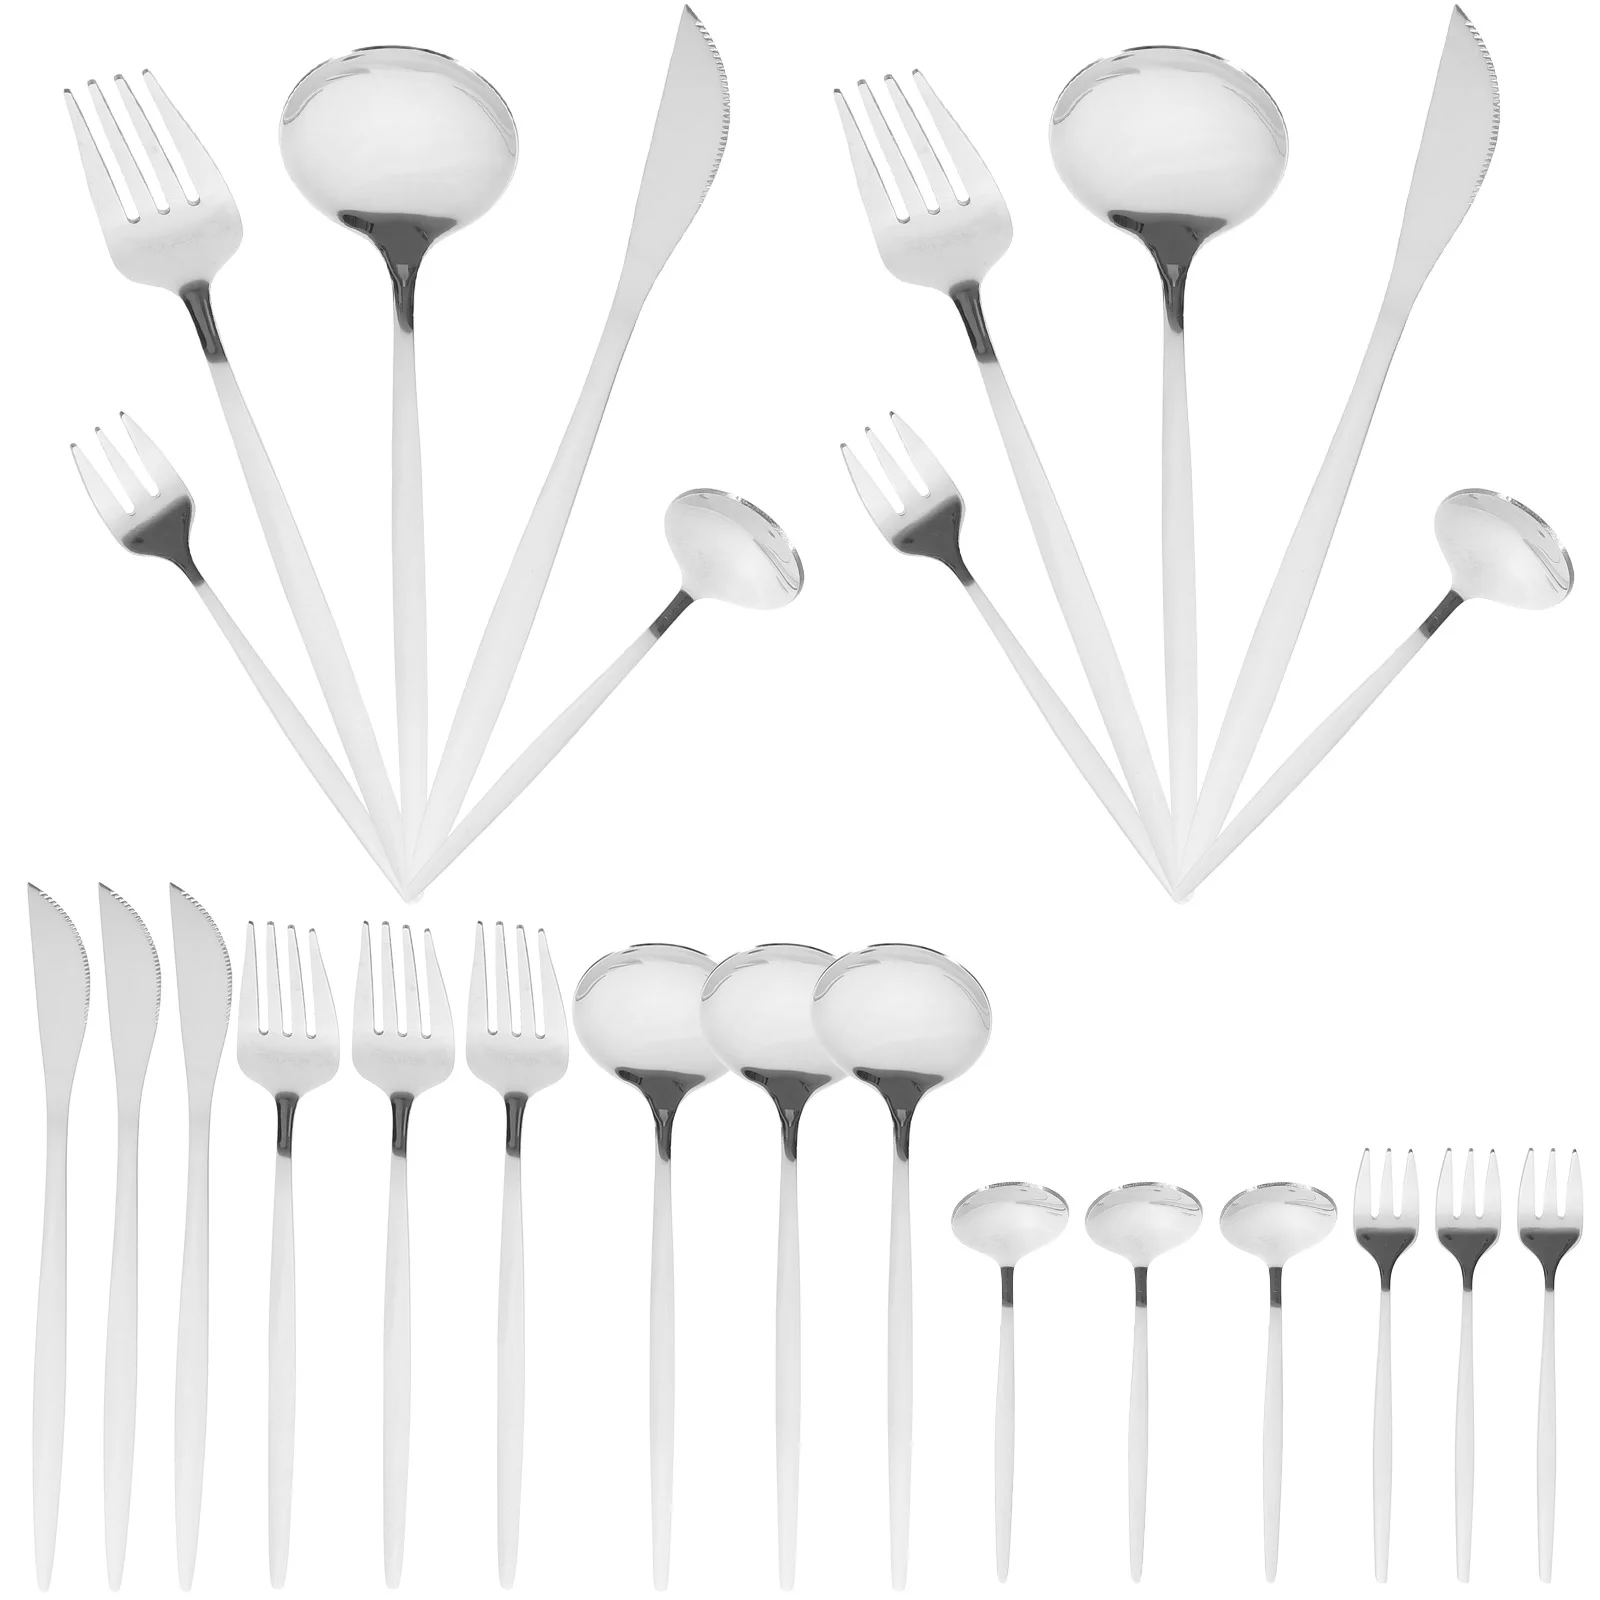 

30 Pcs Stainless Steel Cutlery Set Tableware Serving Utensils Flatware Kit Fork Spoon Steak